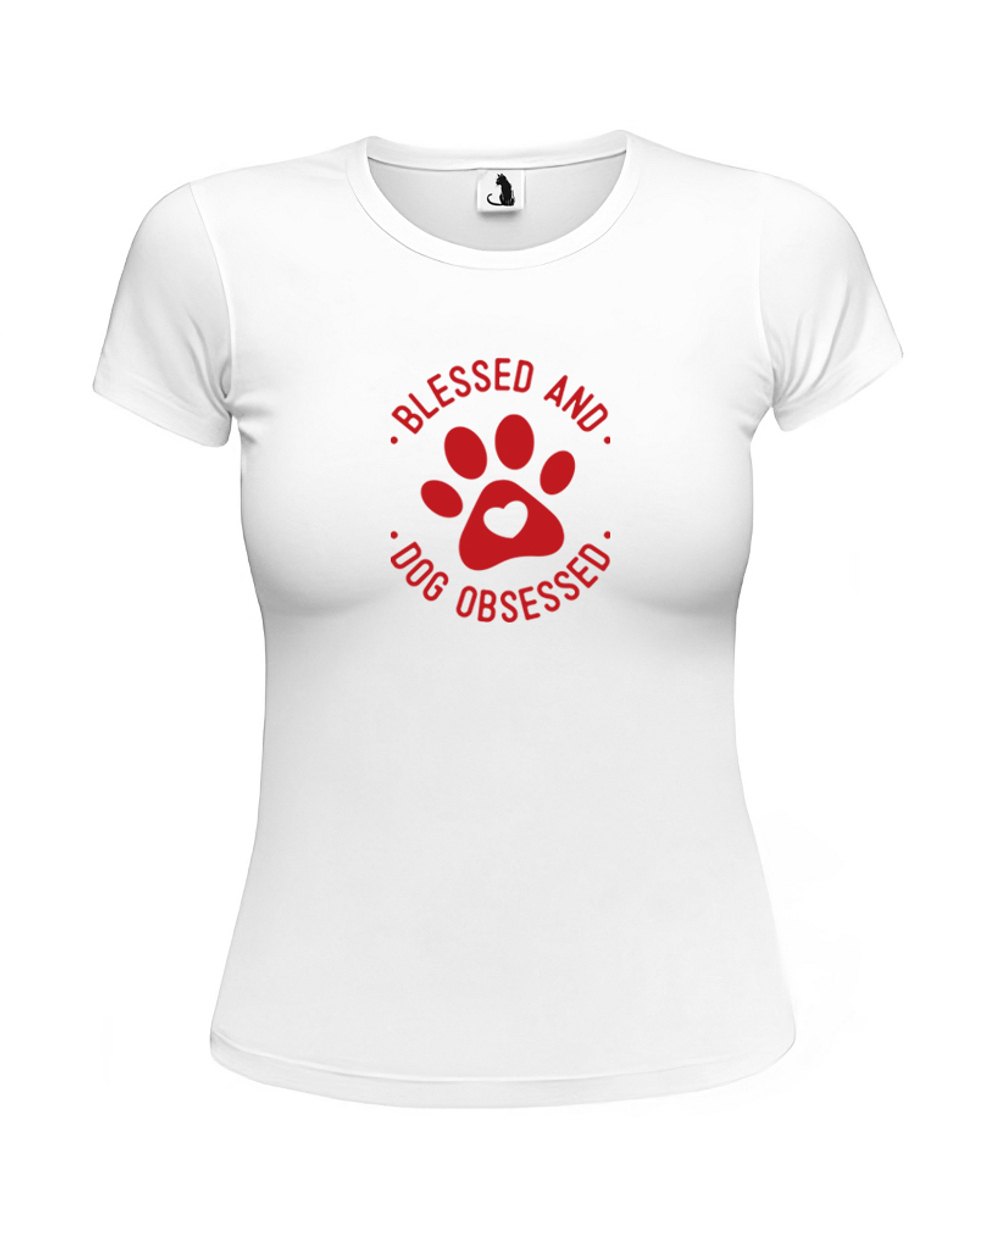 Футболка Blessed and dog obsessed женская приталенная белая с красным рисунком